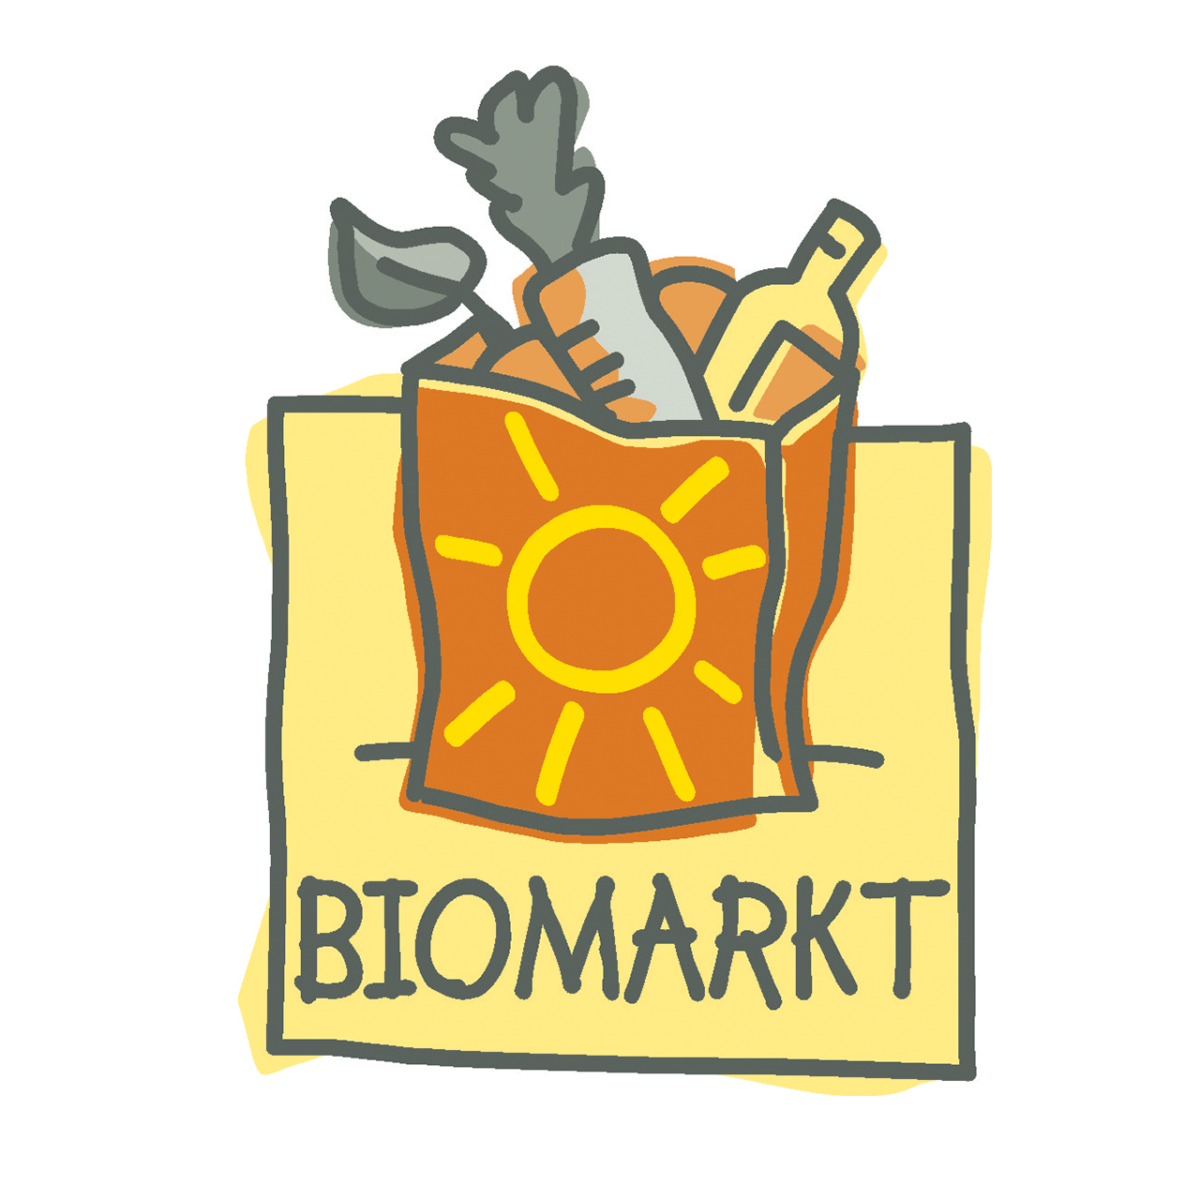 Biomarkt